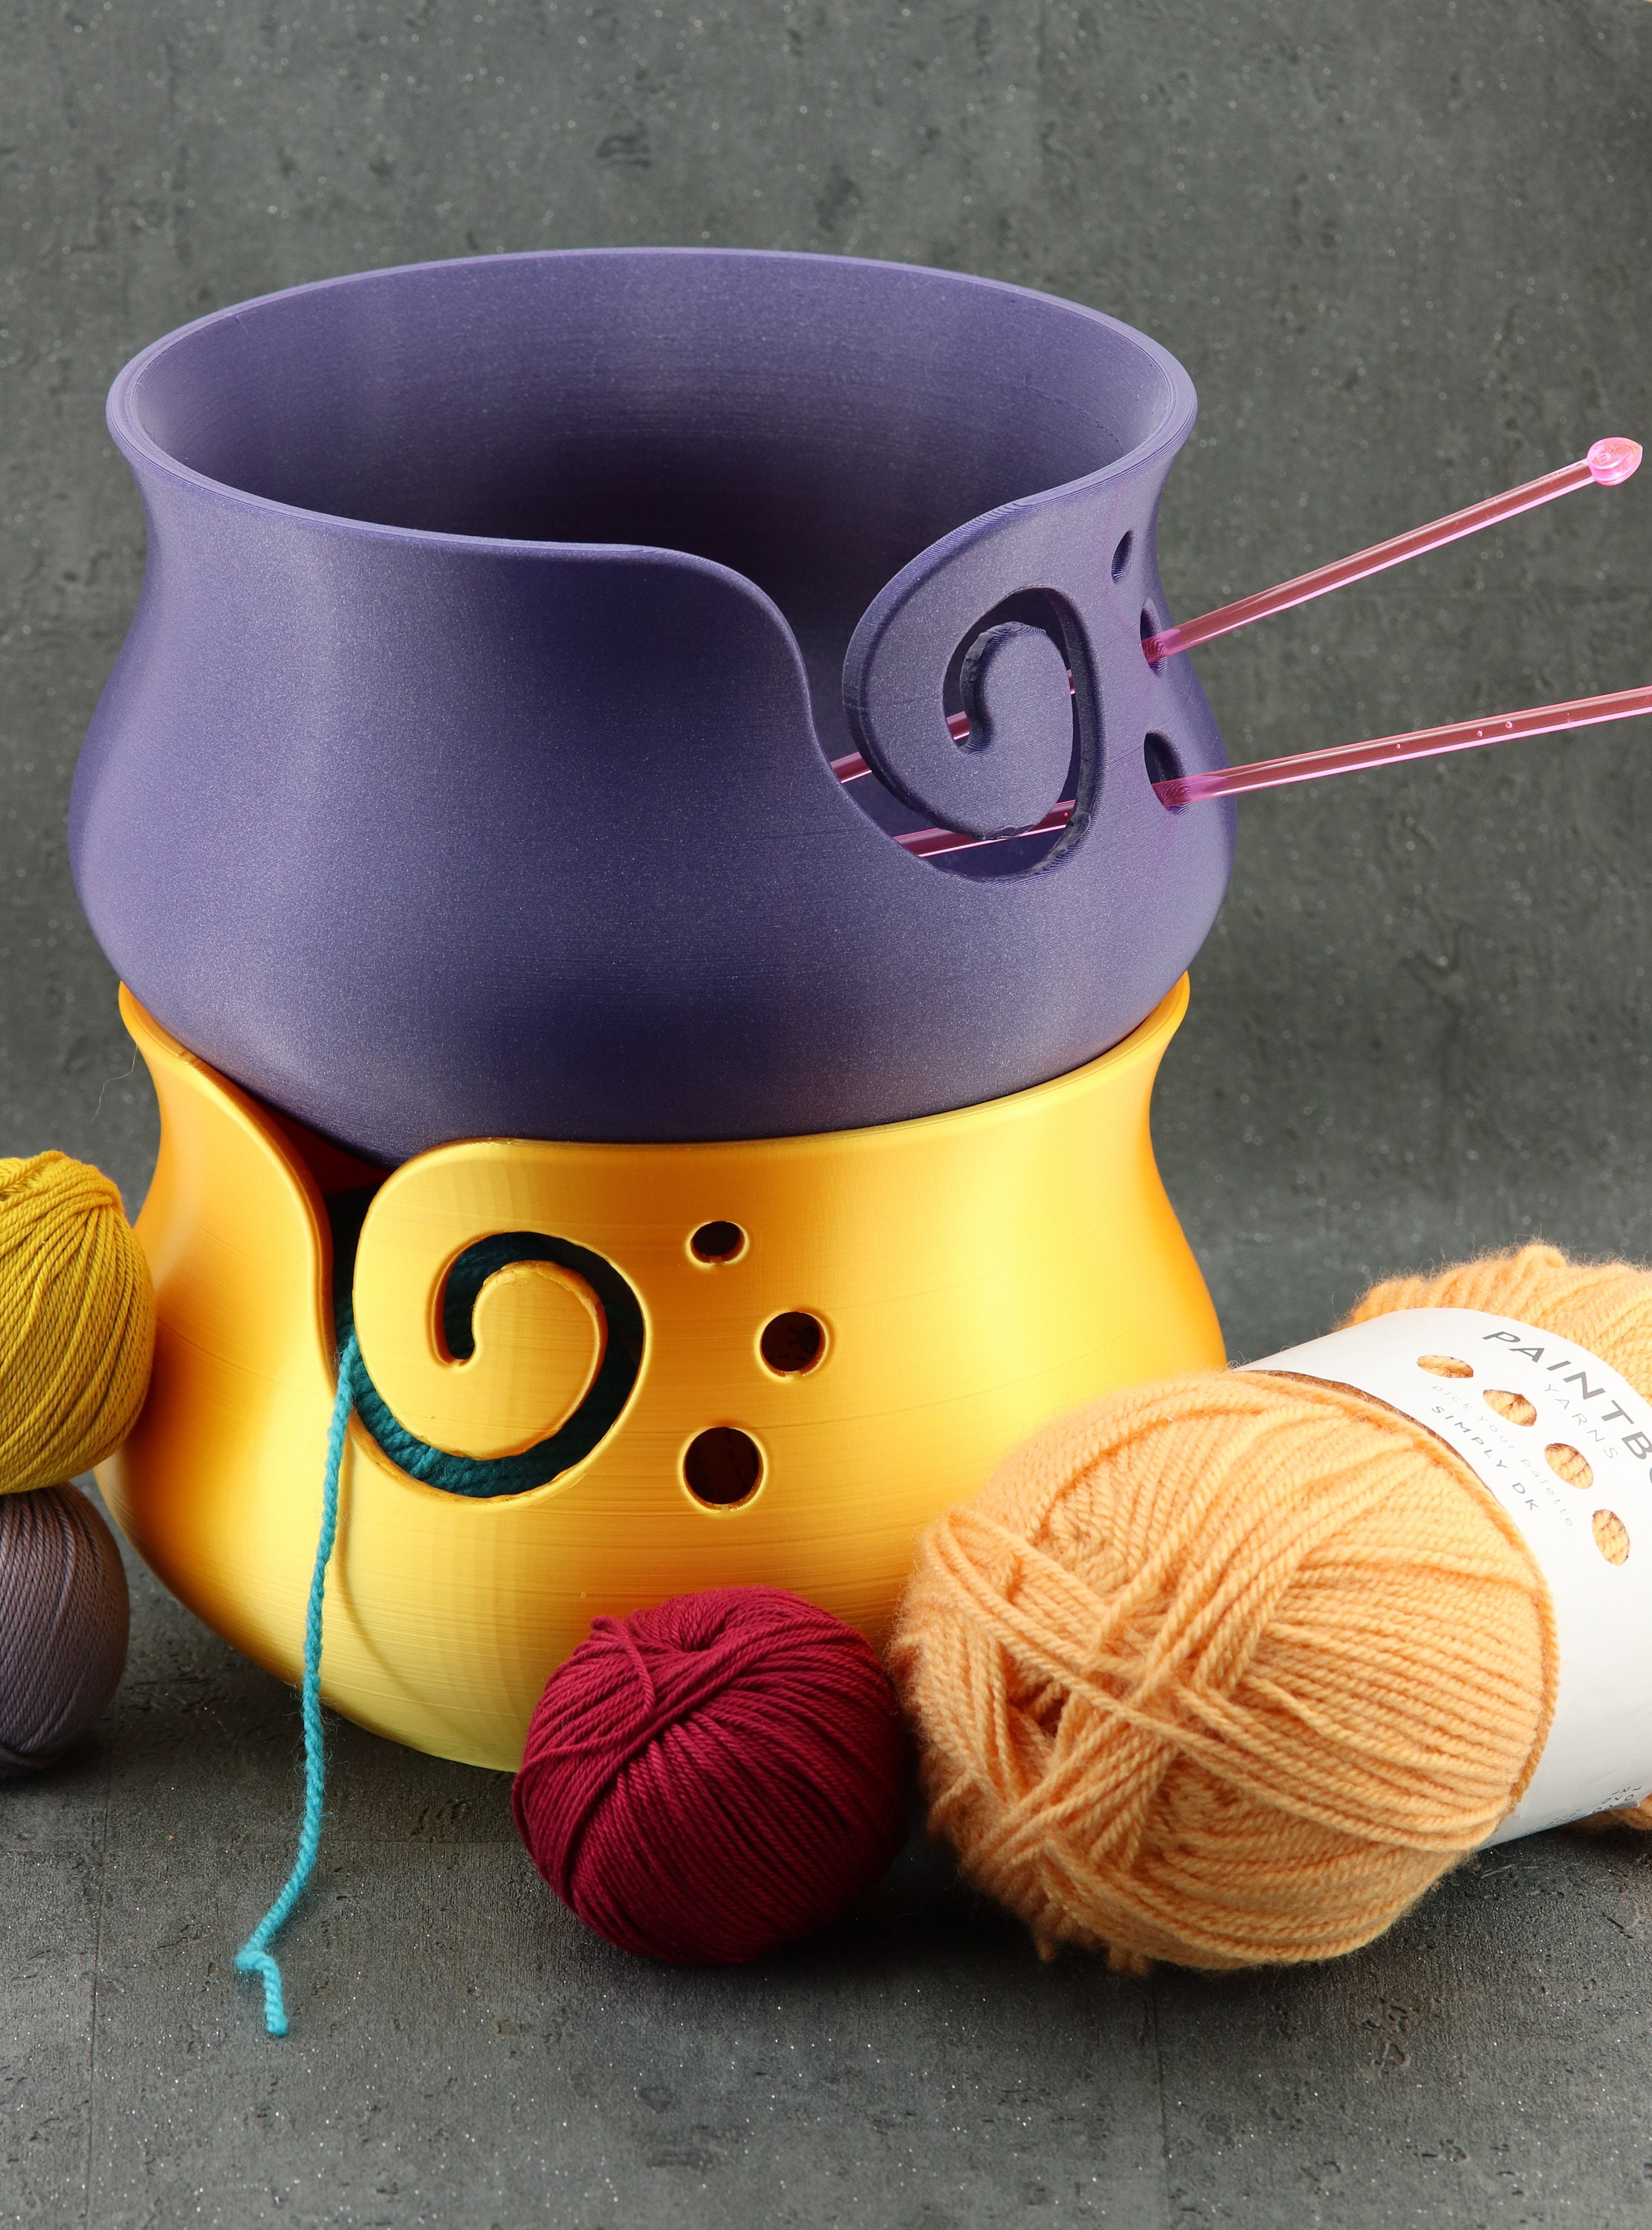 Cyrank Yarn Storage Bowl, Plastic Yarn Bowl with Lid Yarn Bowls for  Crocheting with Holes Knitting Bowl Large Crochet Yarn Holder for DIY  Knitting